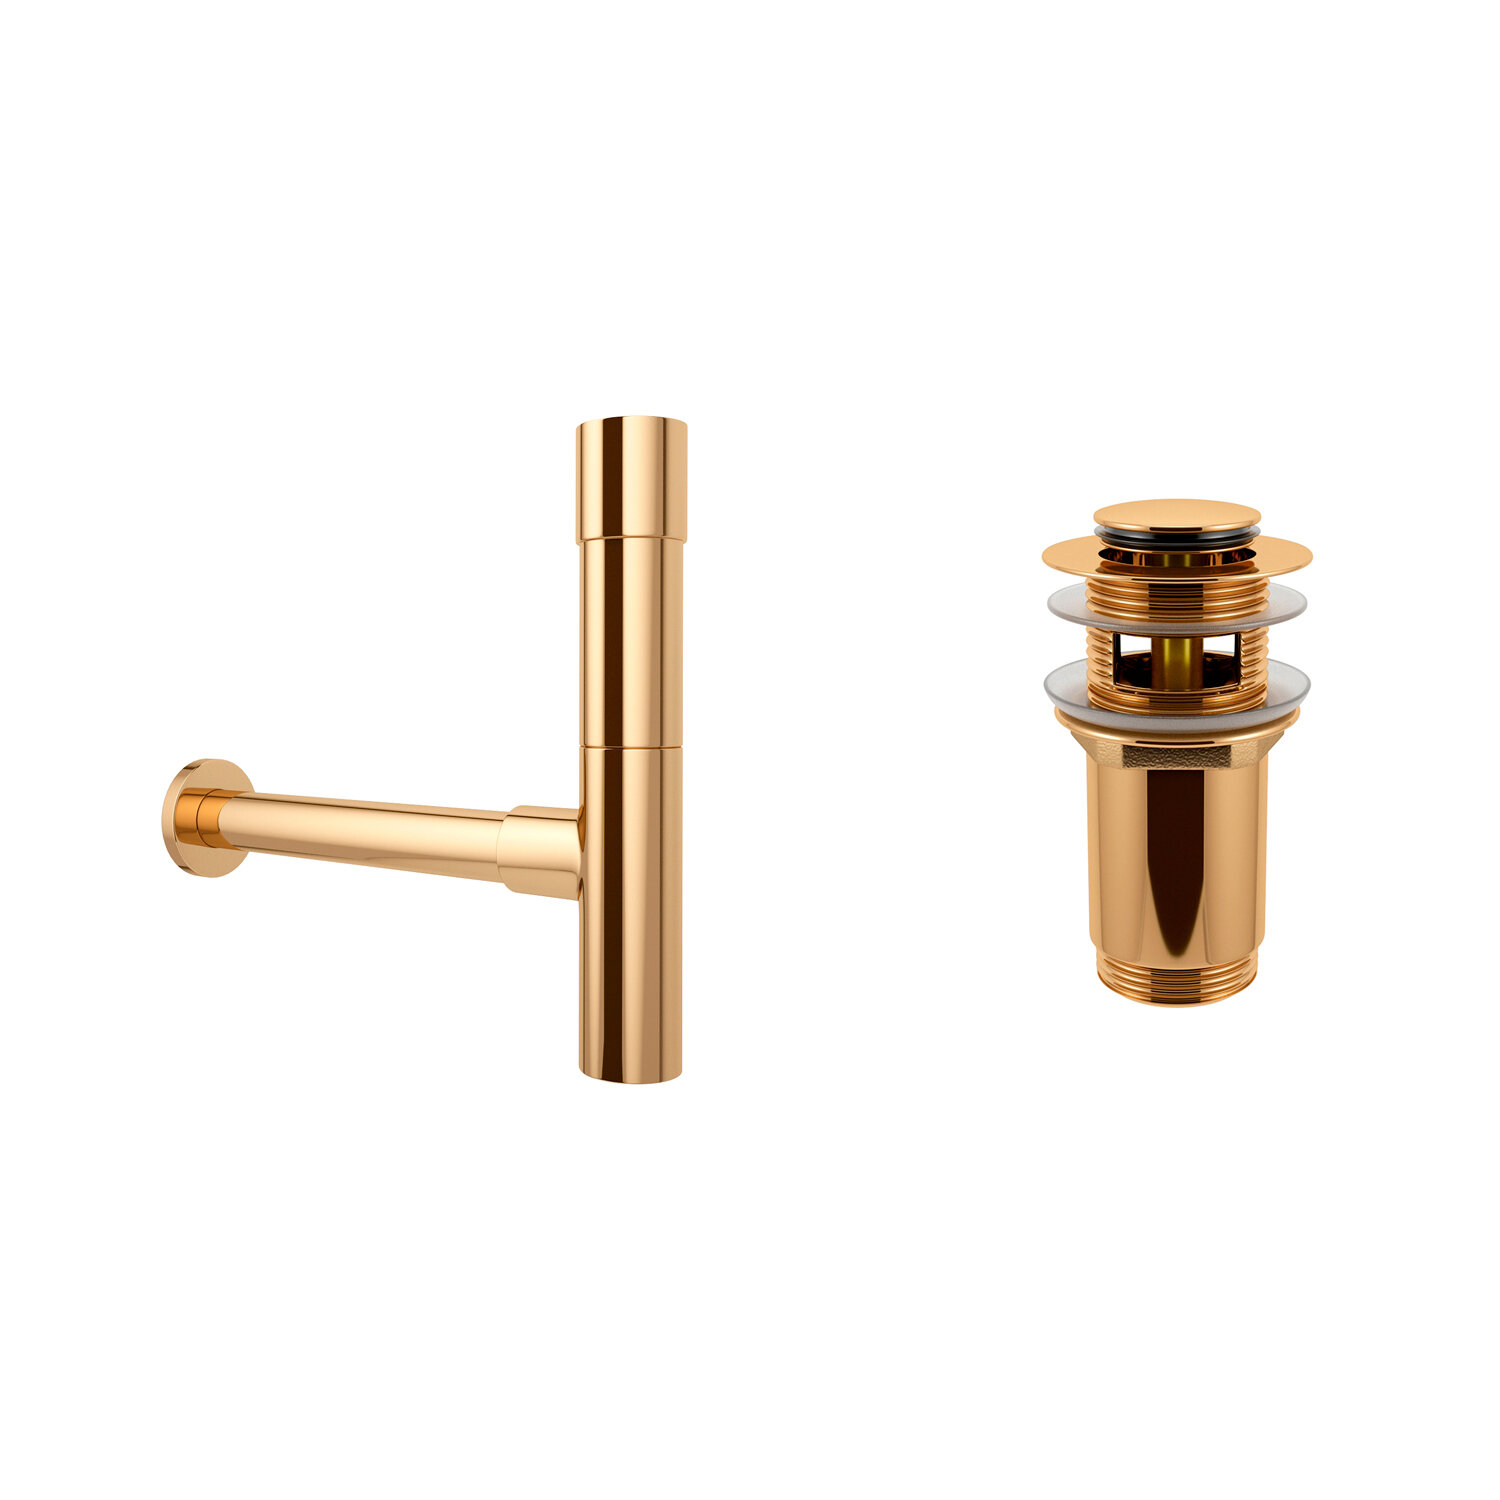 Сифон для раковины Wellsee Drainage System 182116001 в наборе 2 в 1: металлический сифон и донный клапан с переливом в цвете золото - фотография № 1